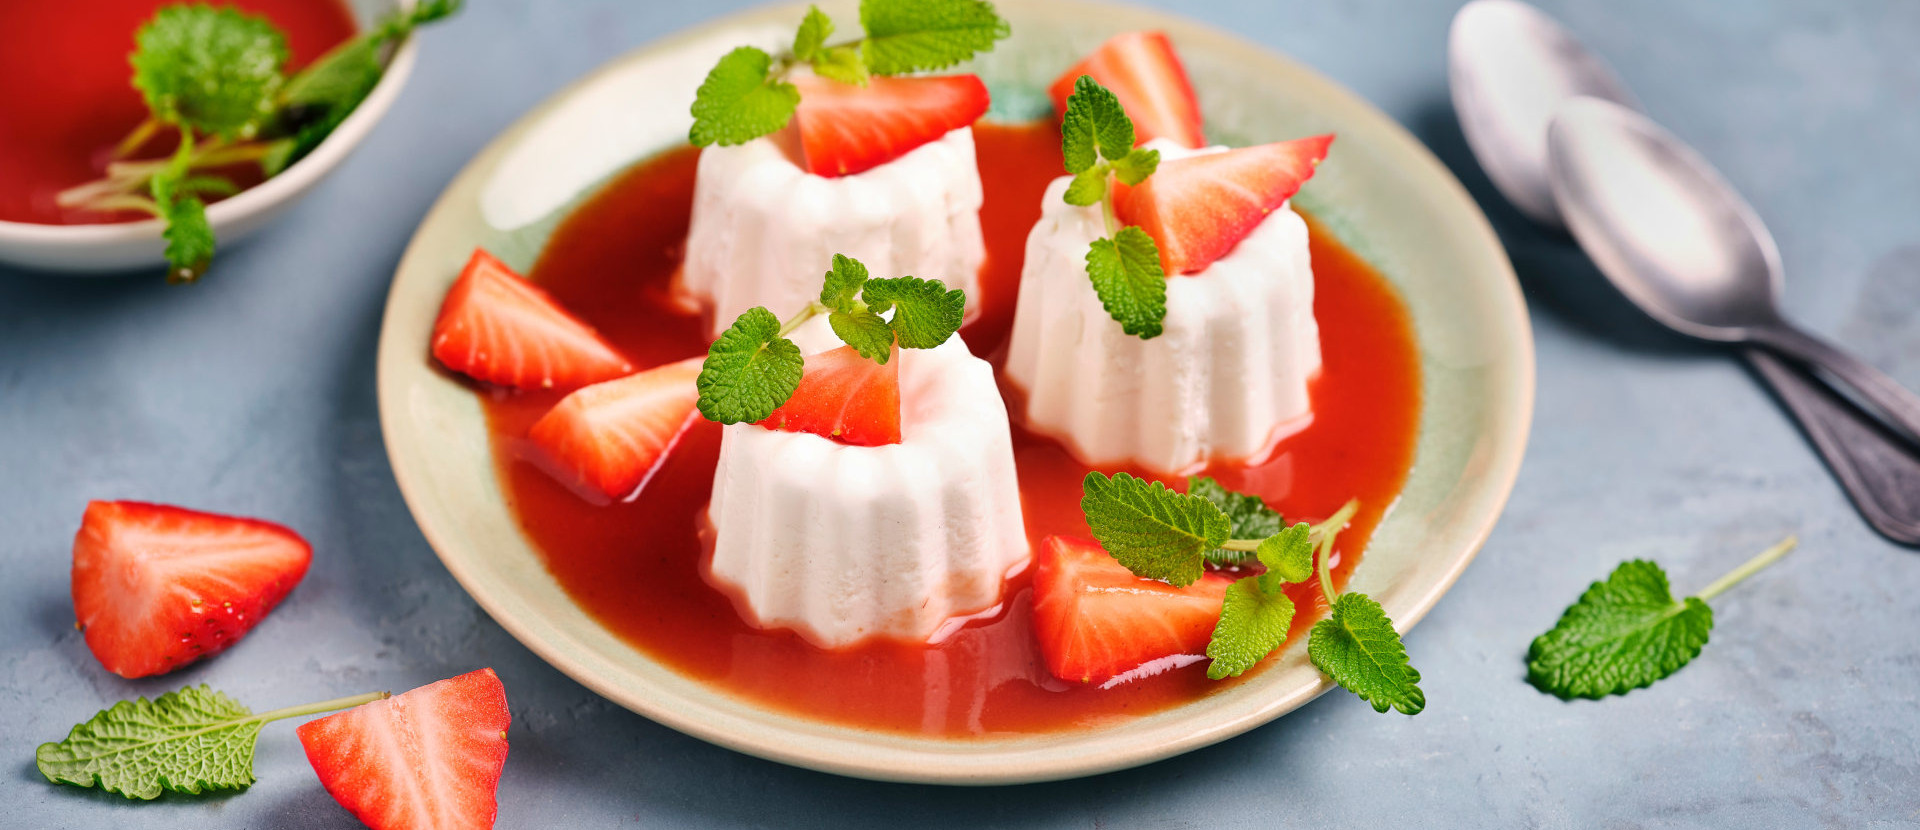 vegane Erdbeer Panna Cotta mit roter Erdbeersauce präsentiert auf einem weißem Teller